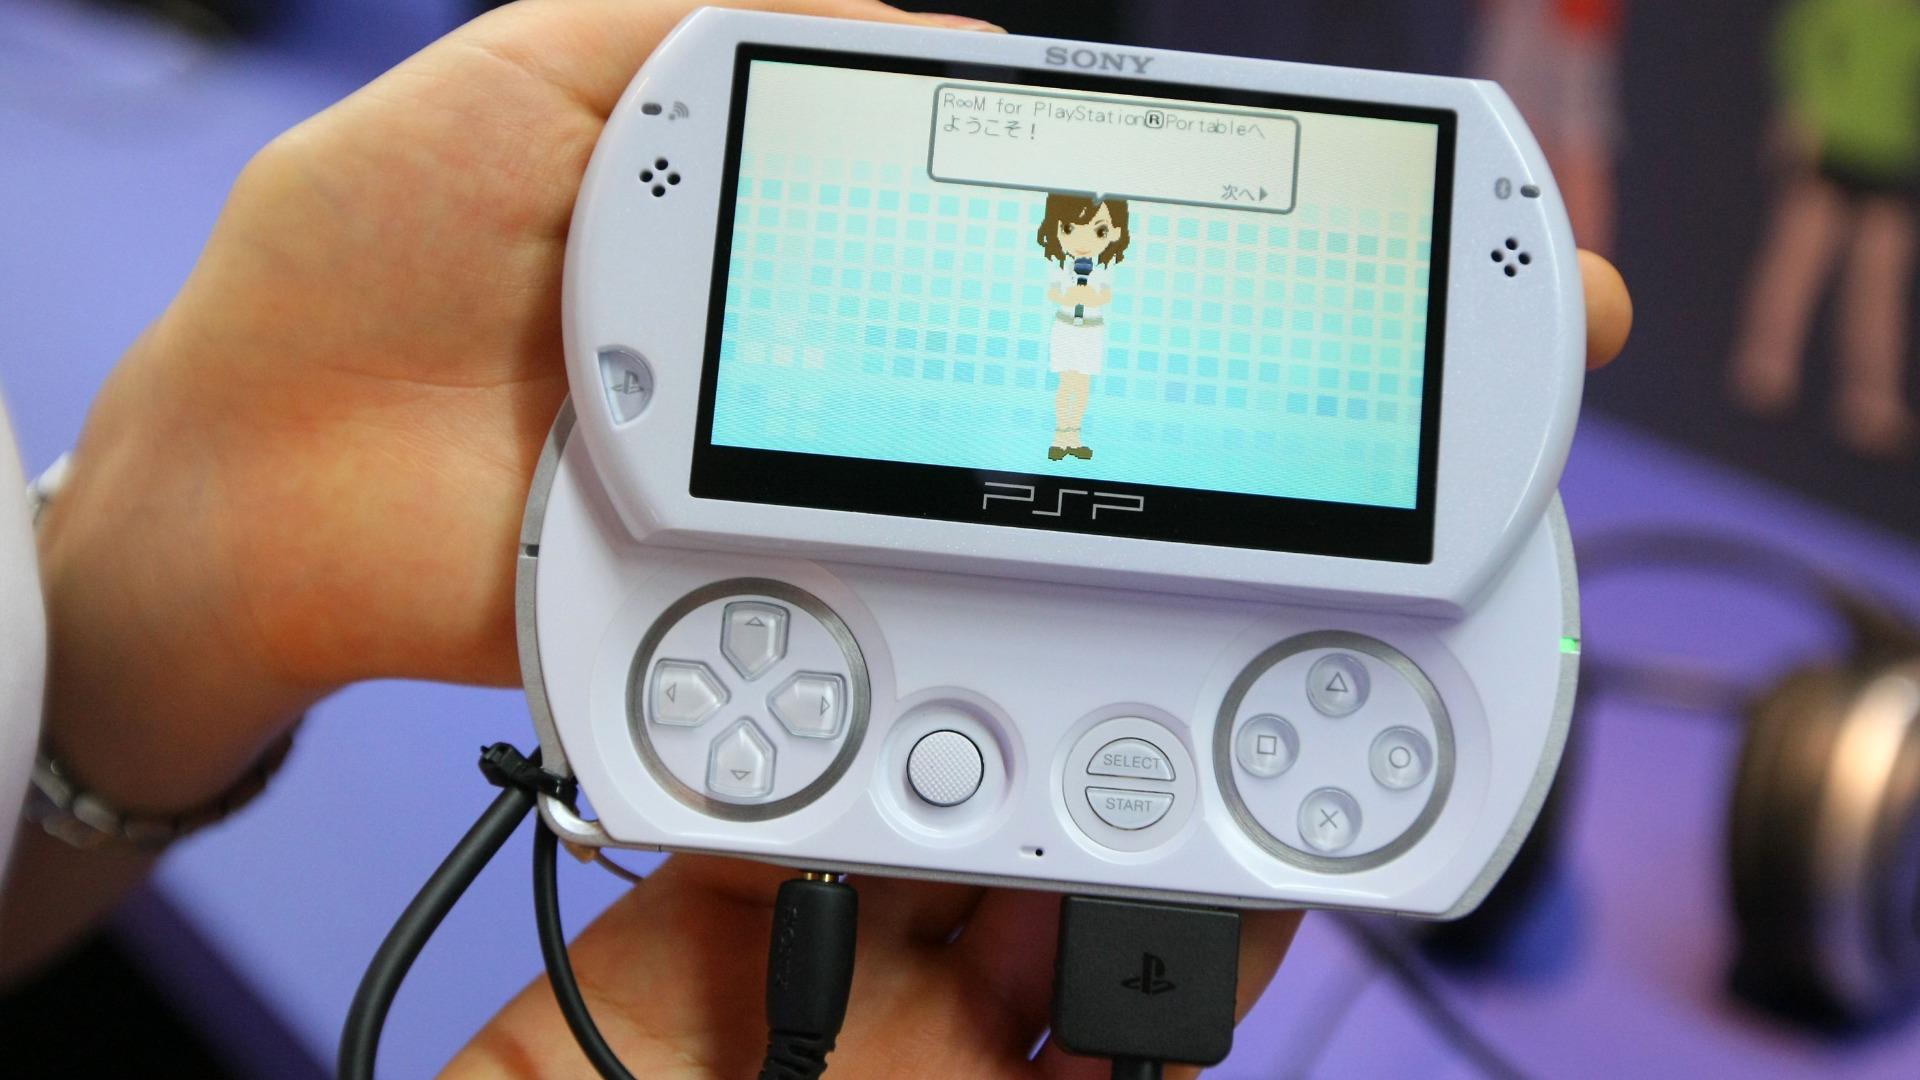 索尼正在准备一款可以运行PS4游戏的新PSP吗？有传言称下一代 Xbox 将于 2026 年下半年发布（Kiyoshi Tane） - 专家 - 雅虎新闻